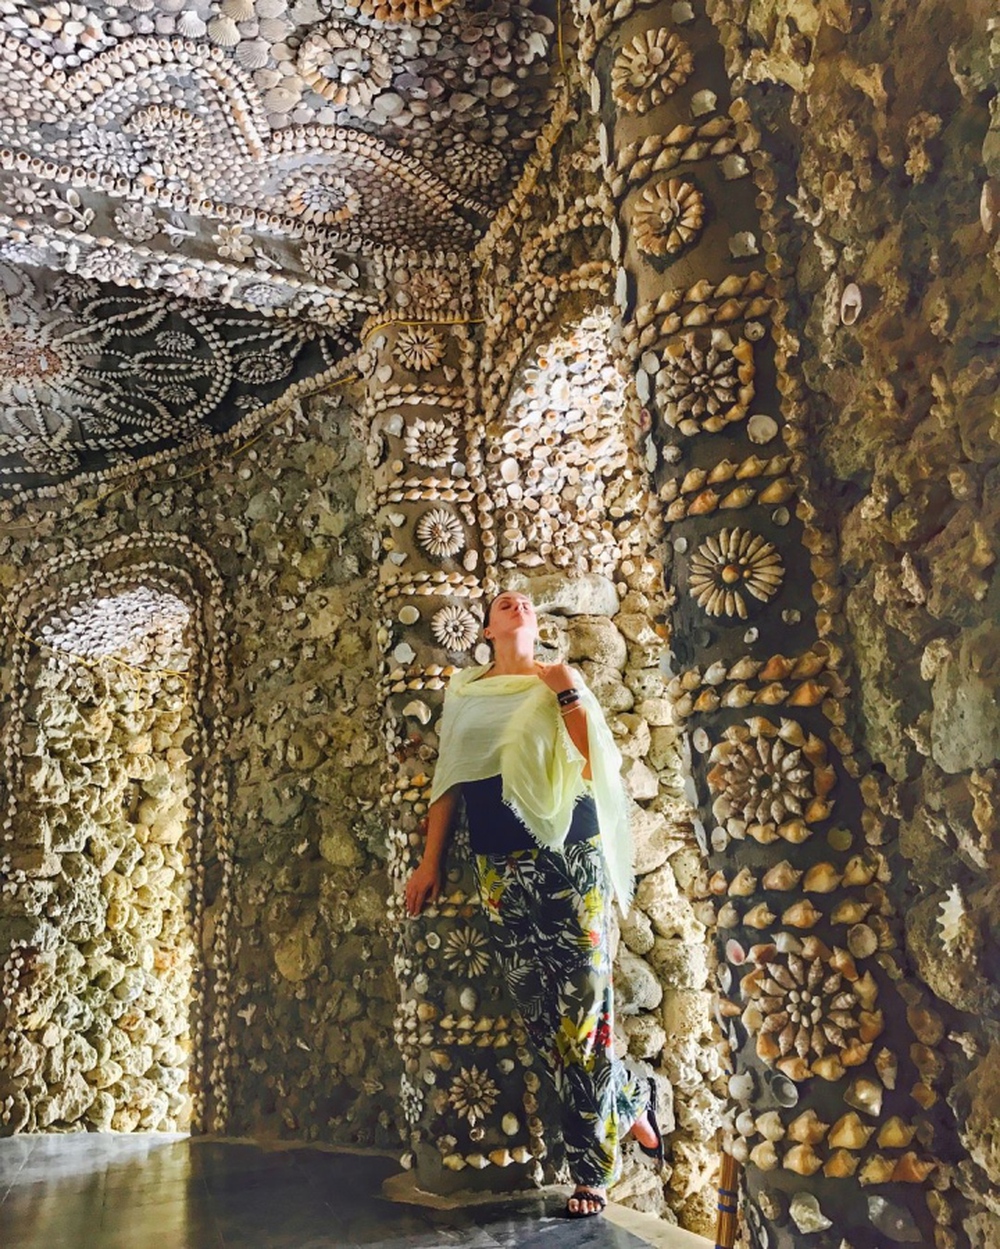 Ngôi chùa độc lạ ở Cam Ranh có kiến trúc làm từ vỏ ốc huyền bí như lâu đài Long Vương - Ảnh 8.